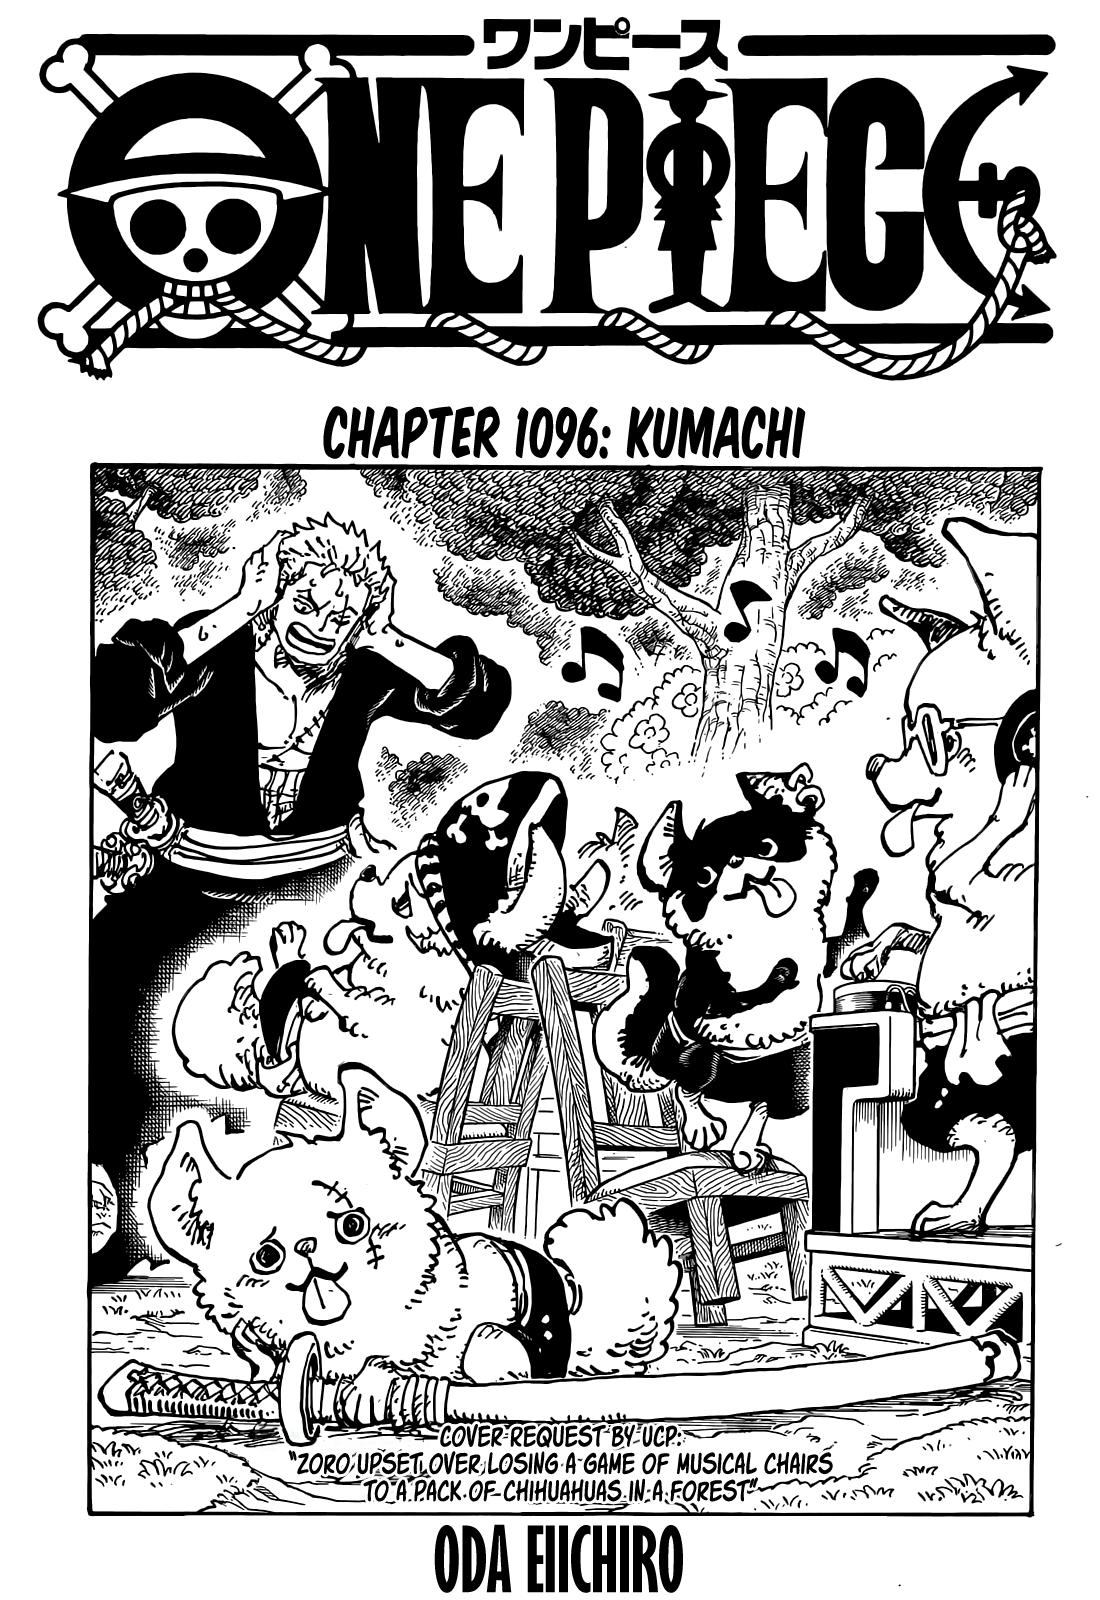 One Piece Chapter 1026  One piece chapter, One piece episodes